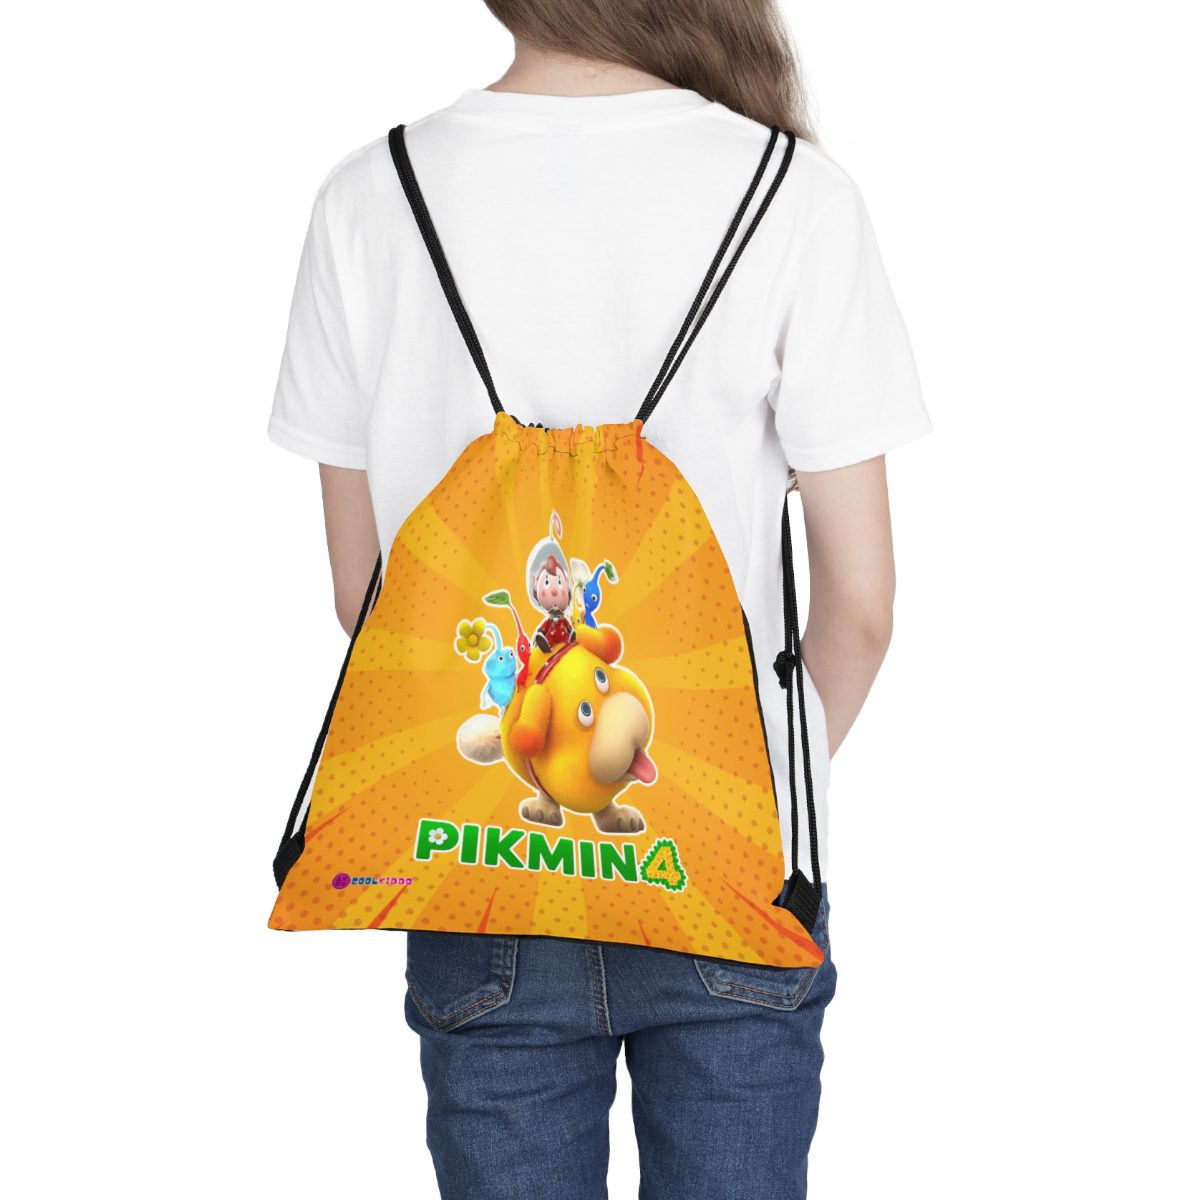 PIKMIN 4 Video Game Yellow Drawstring Bag Cool Kiddo 16